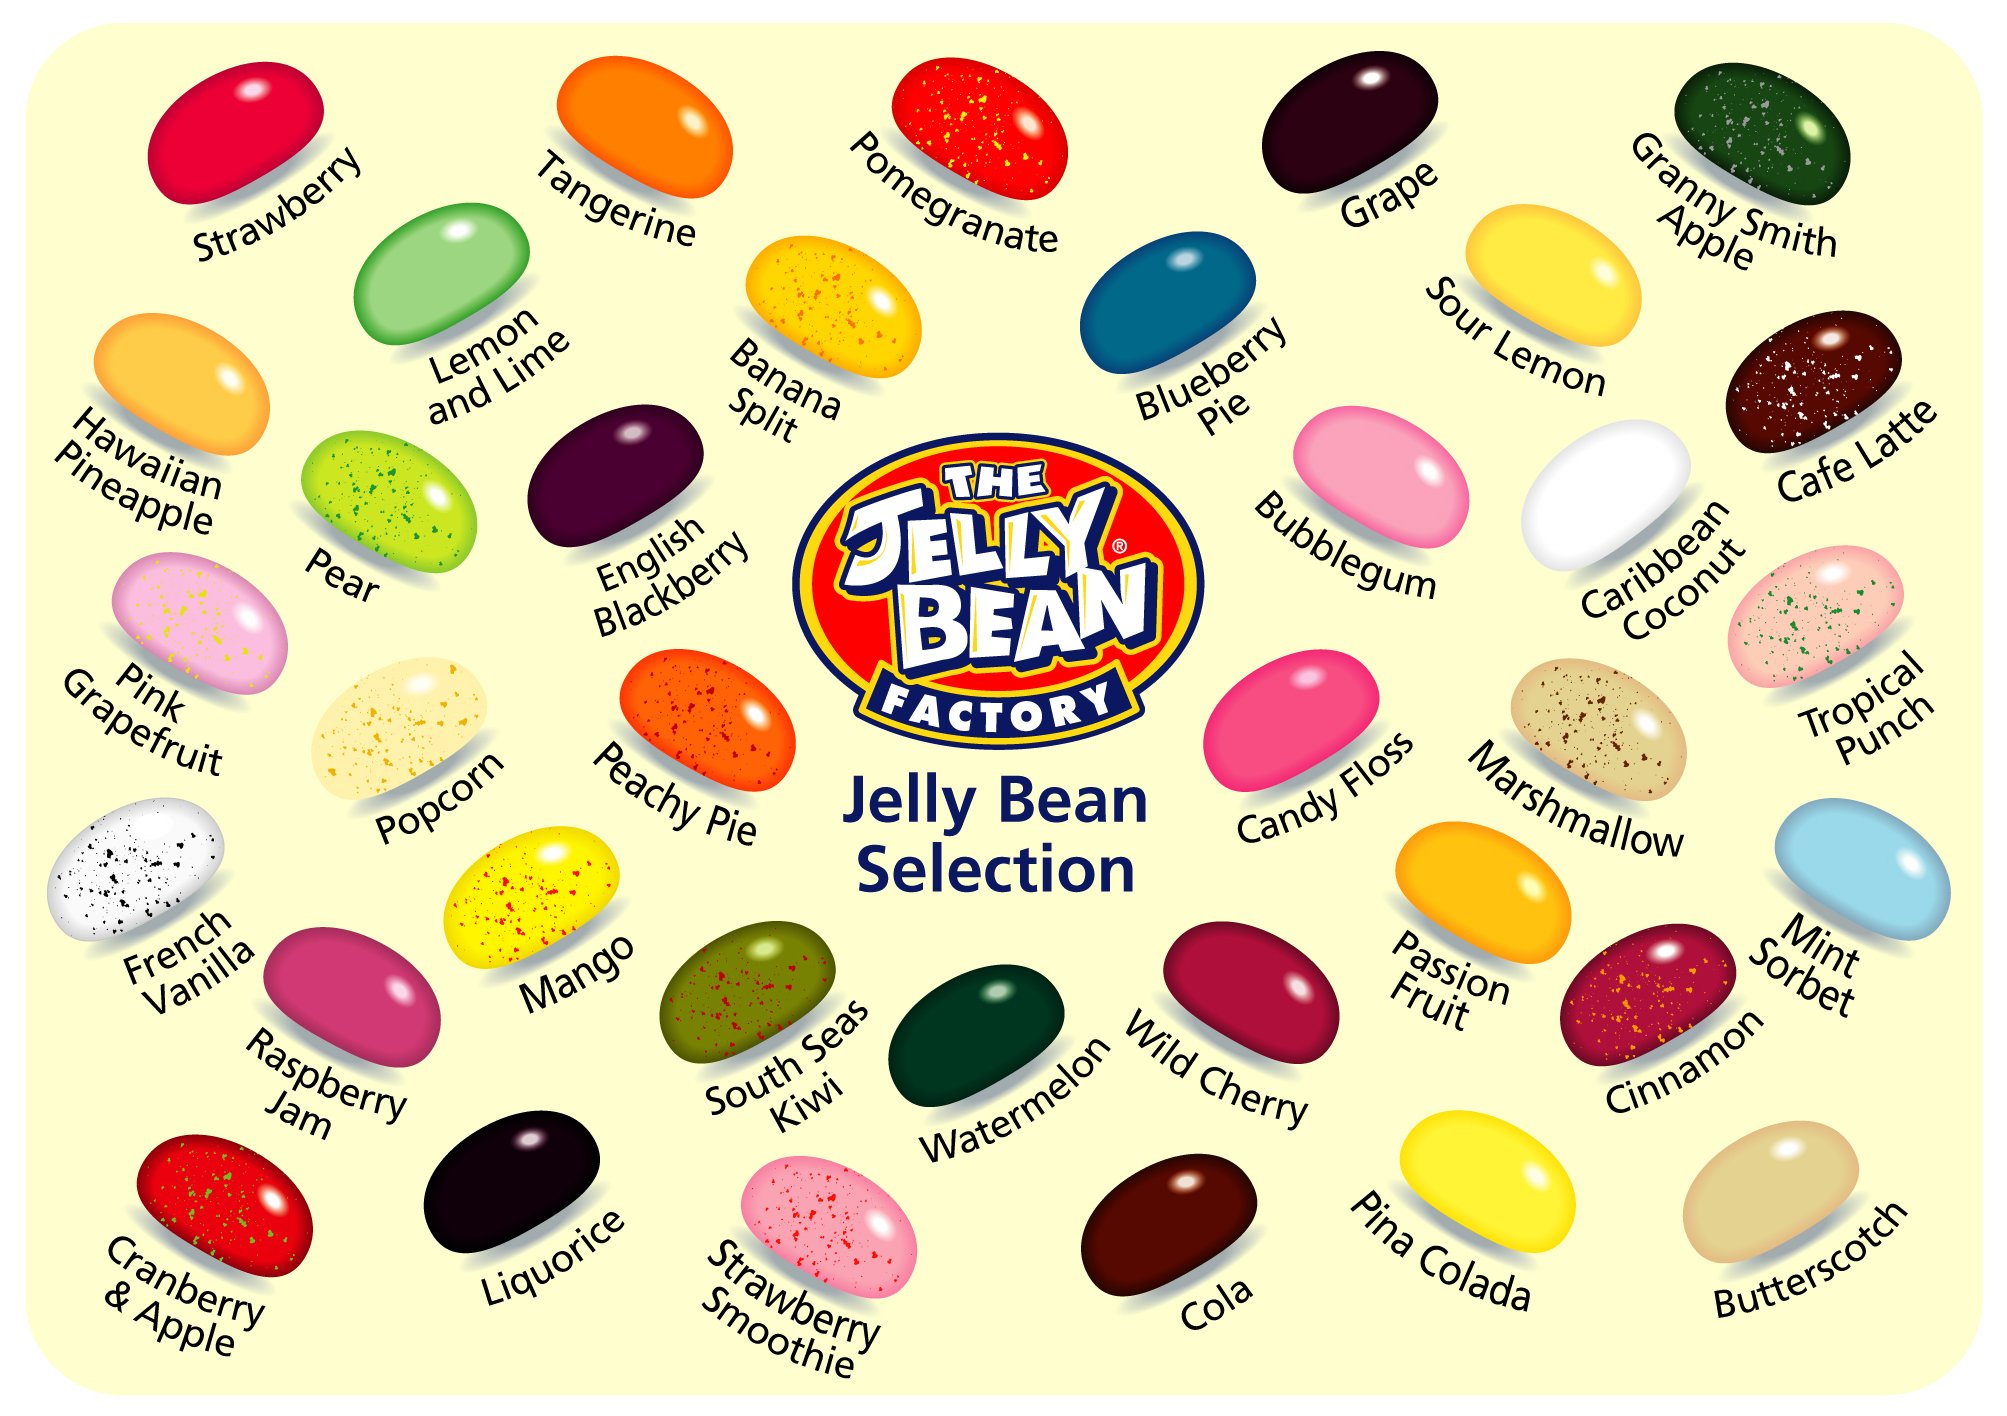 Jelly bean onlyfans. Jelly Bean конфеты. Джелли Белли. Конфеты Jelly belly. Jelly Beans вкусы.